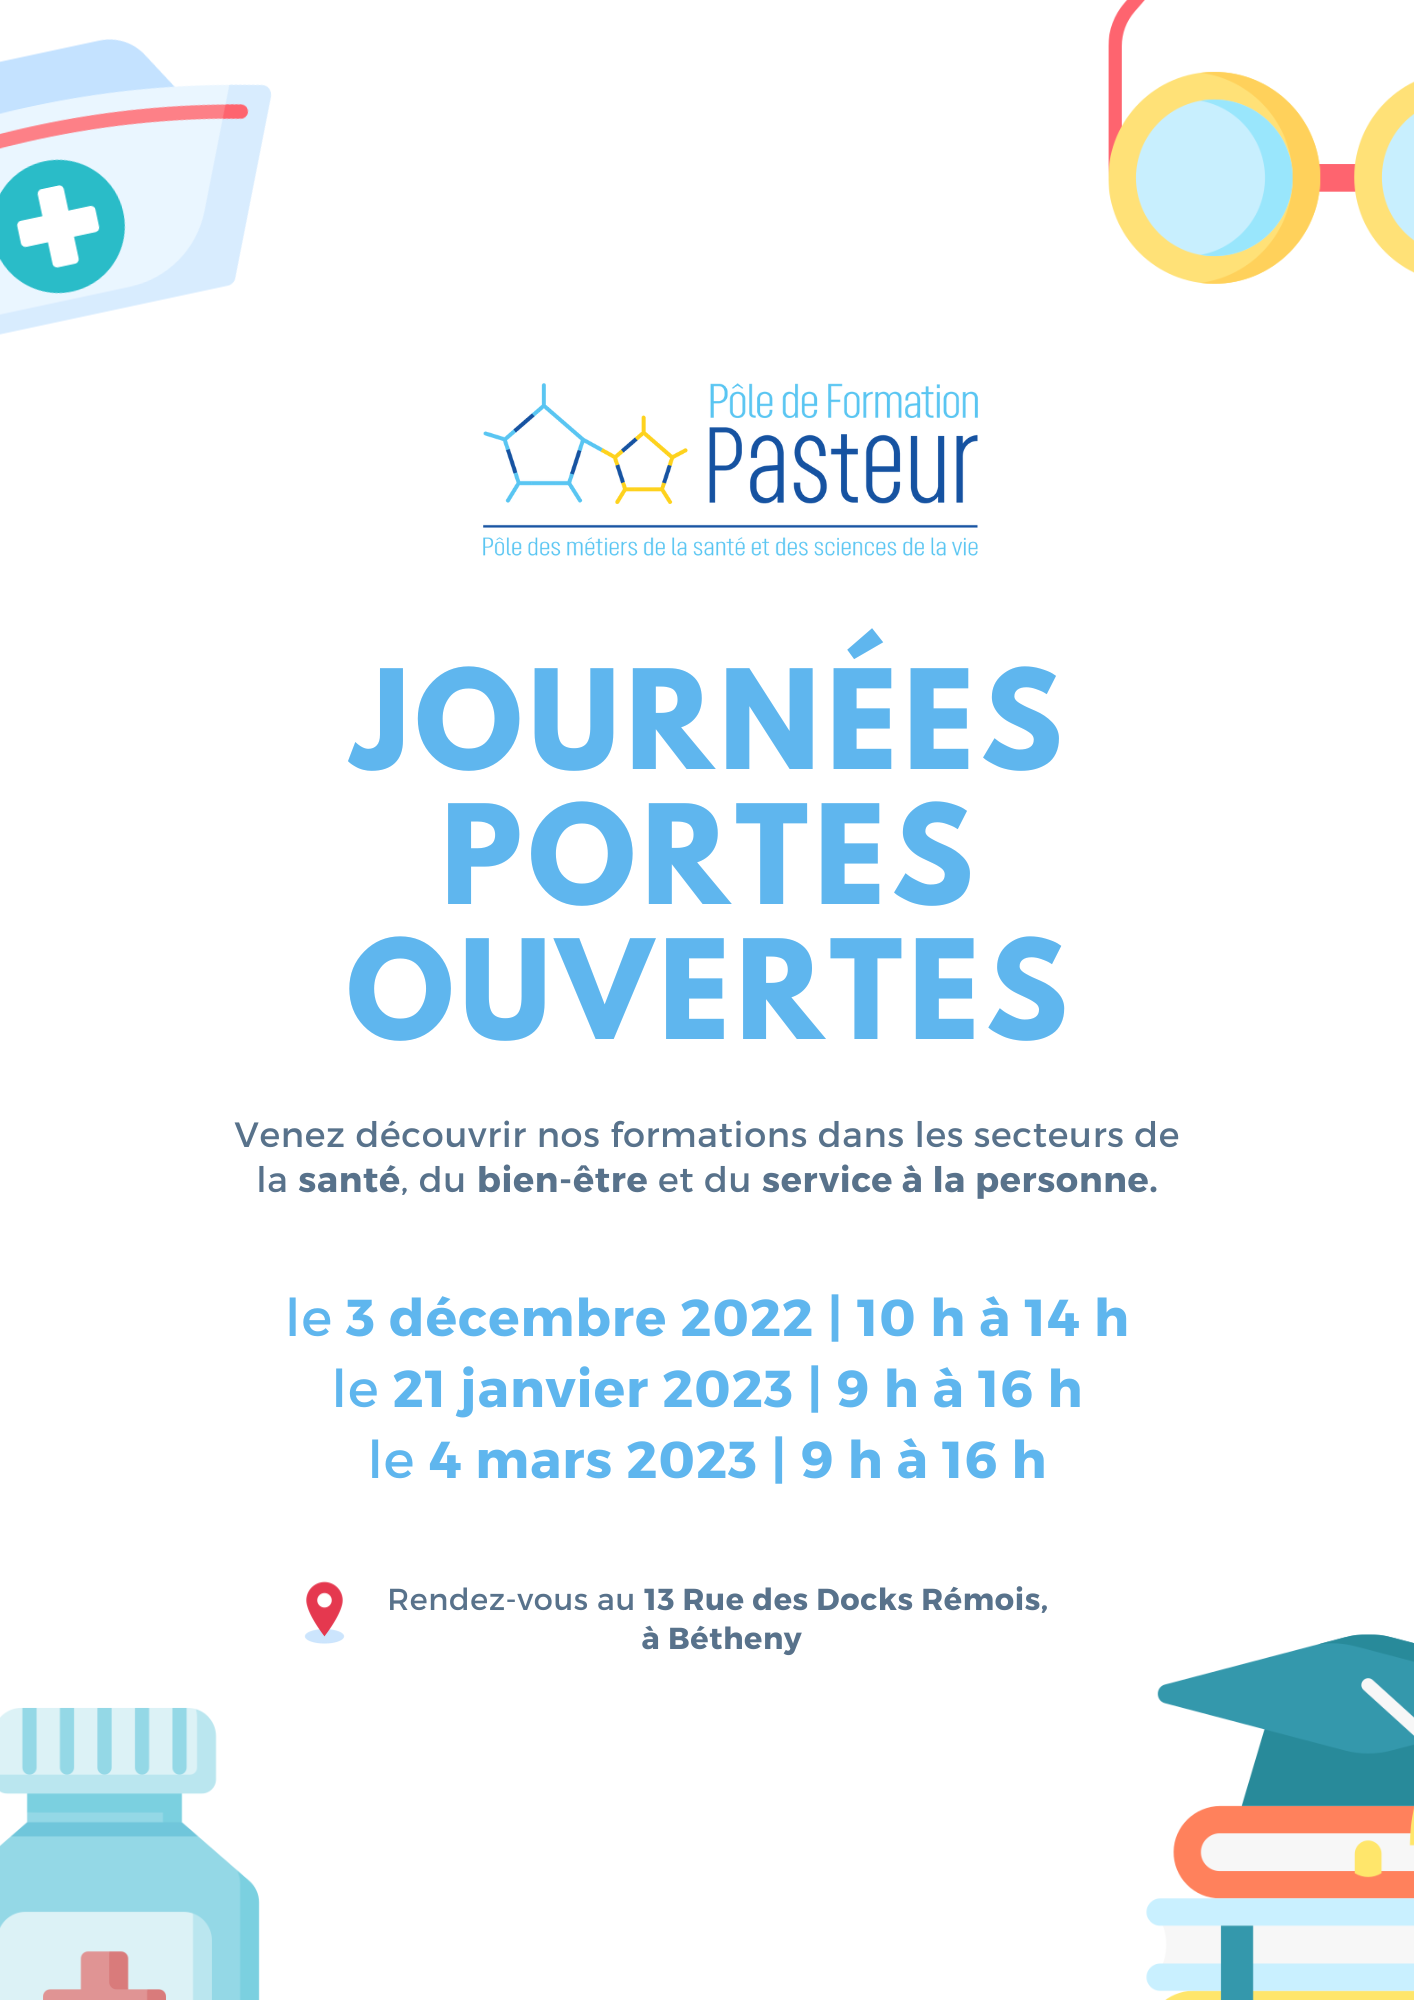 Journée Portes Ouvertes "Pôle de Formation Pasteur"